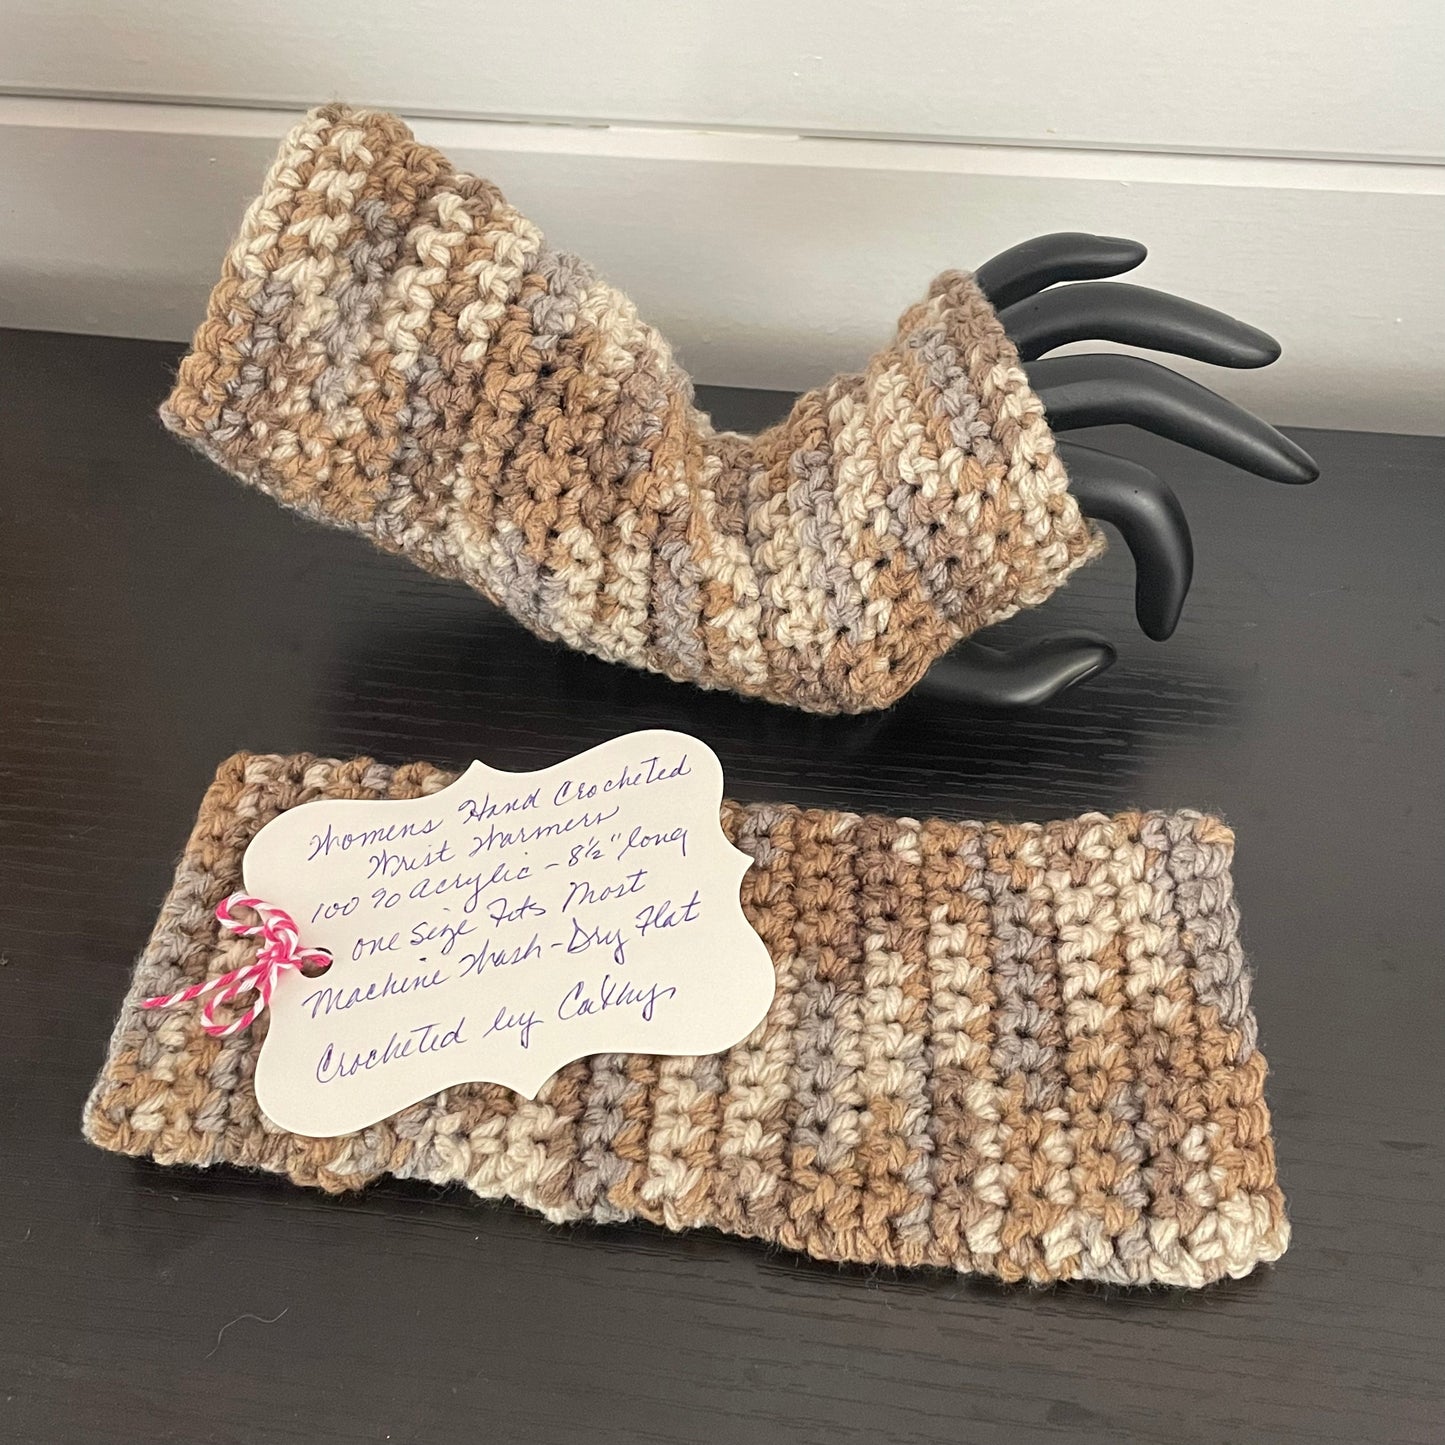 Desert Sands Texting Fingerless Gloves Crochet Knit Fall Winter Gaming Tech Wrist Warmers Brown Tan Marble